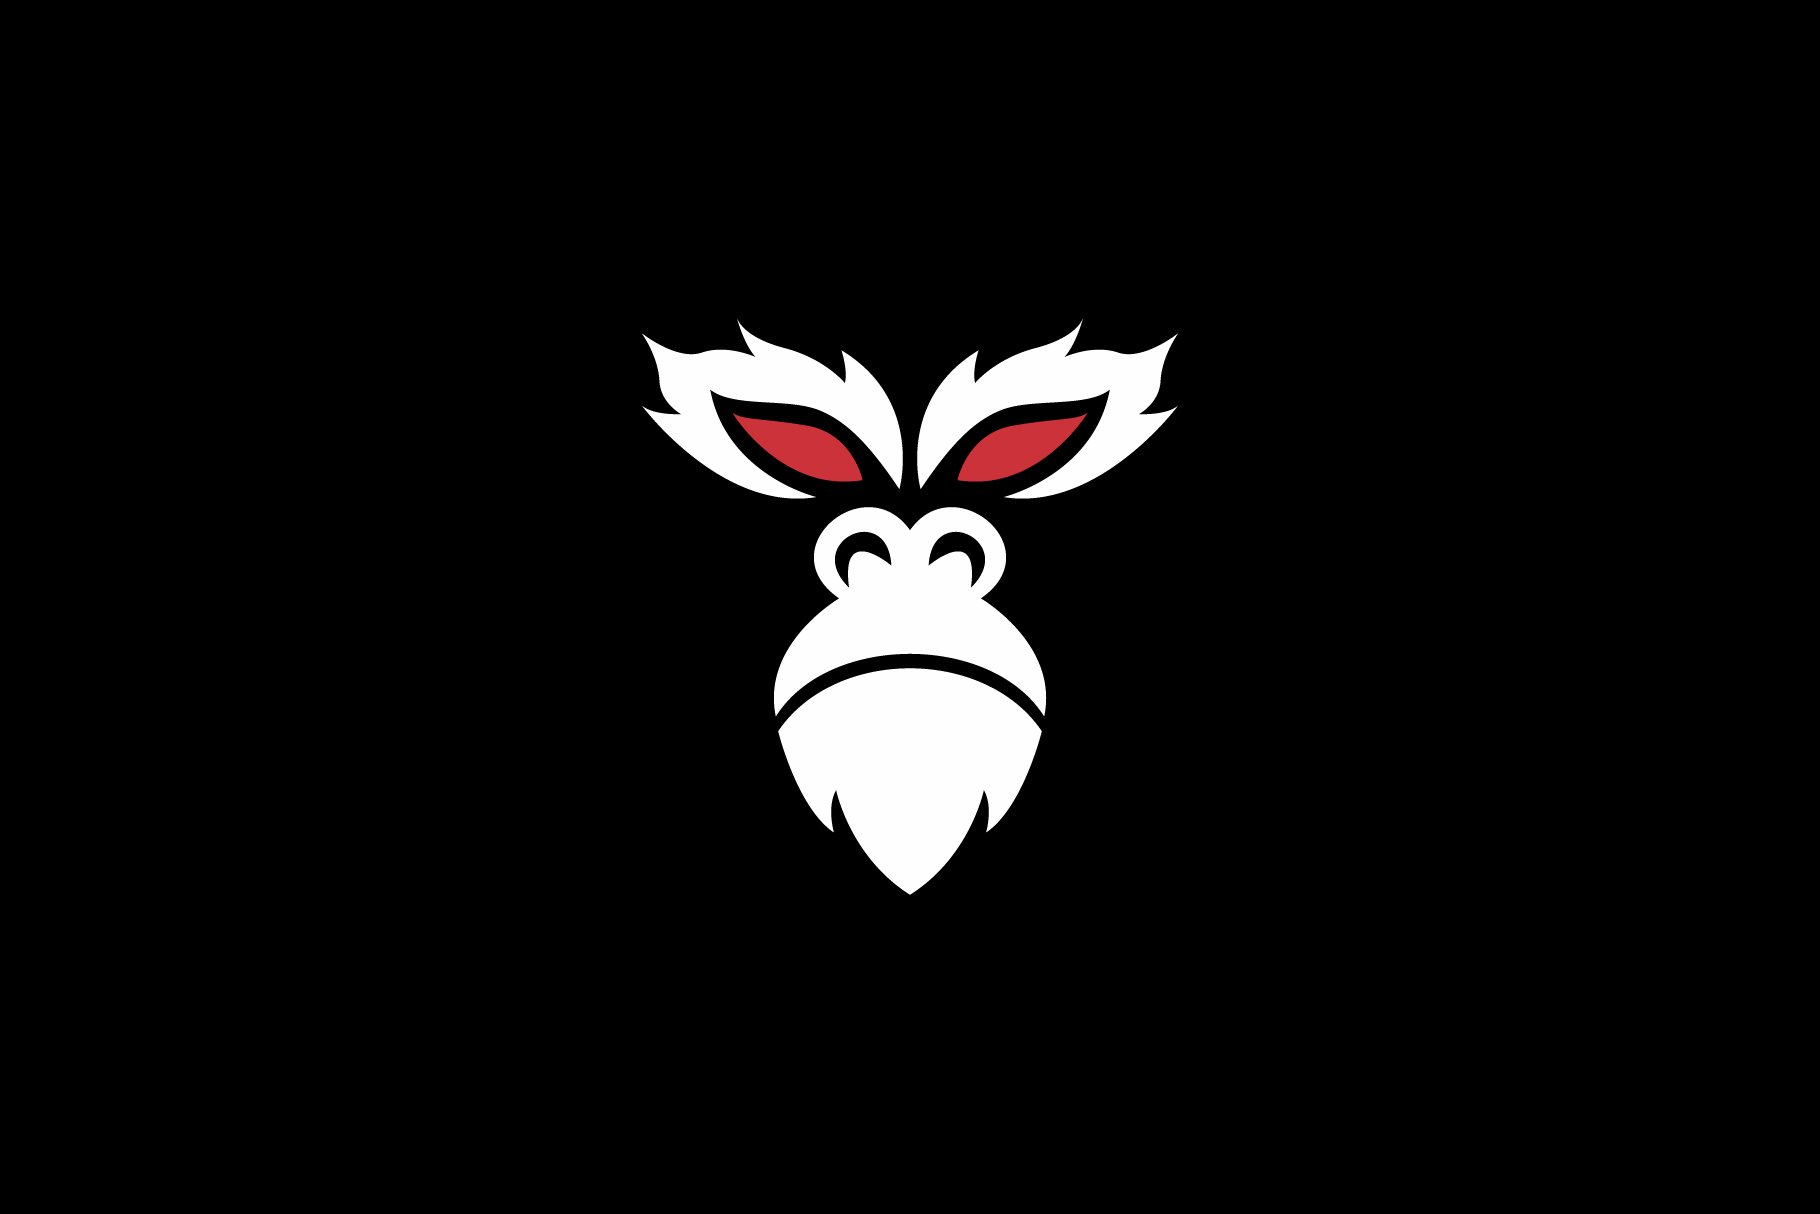 monkey face logo cover image.